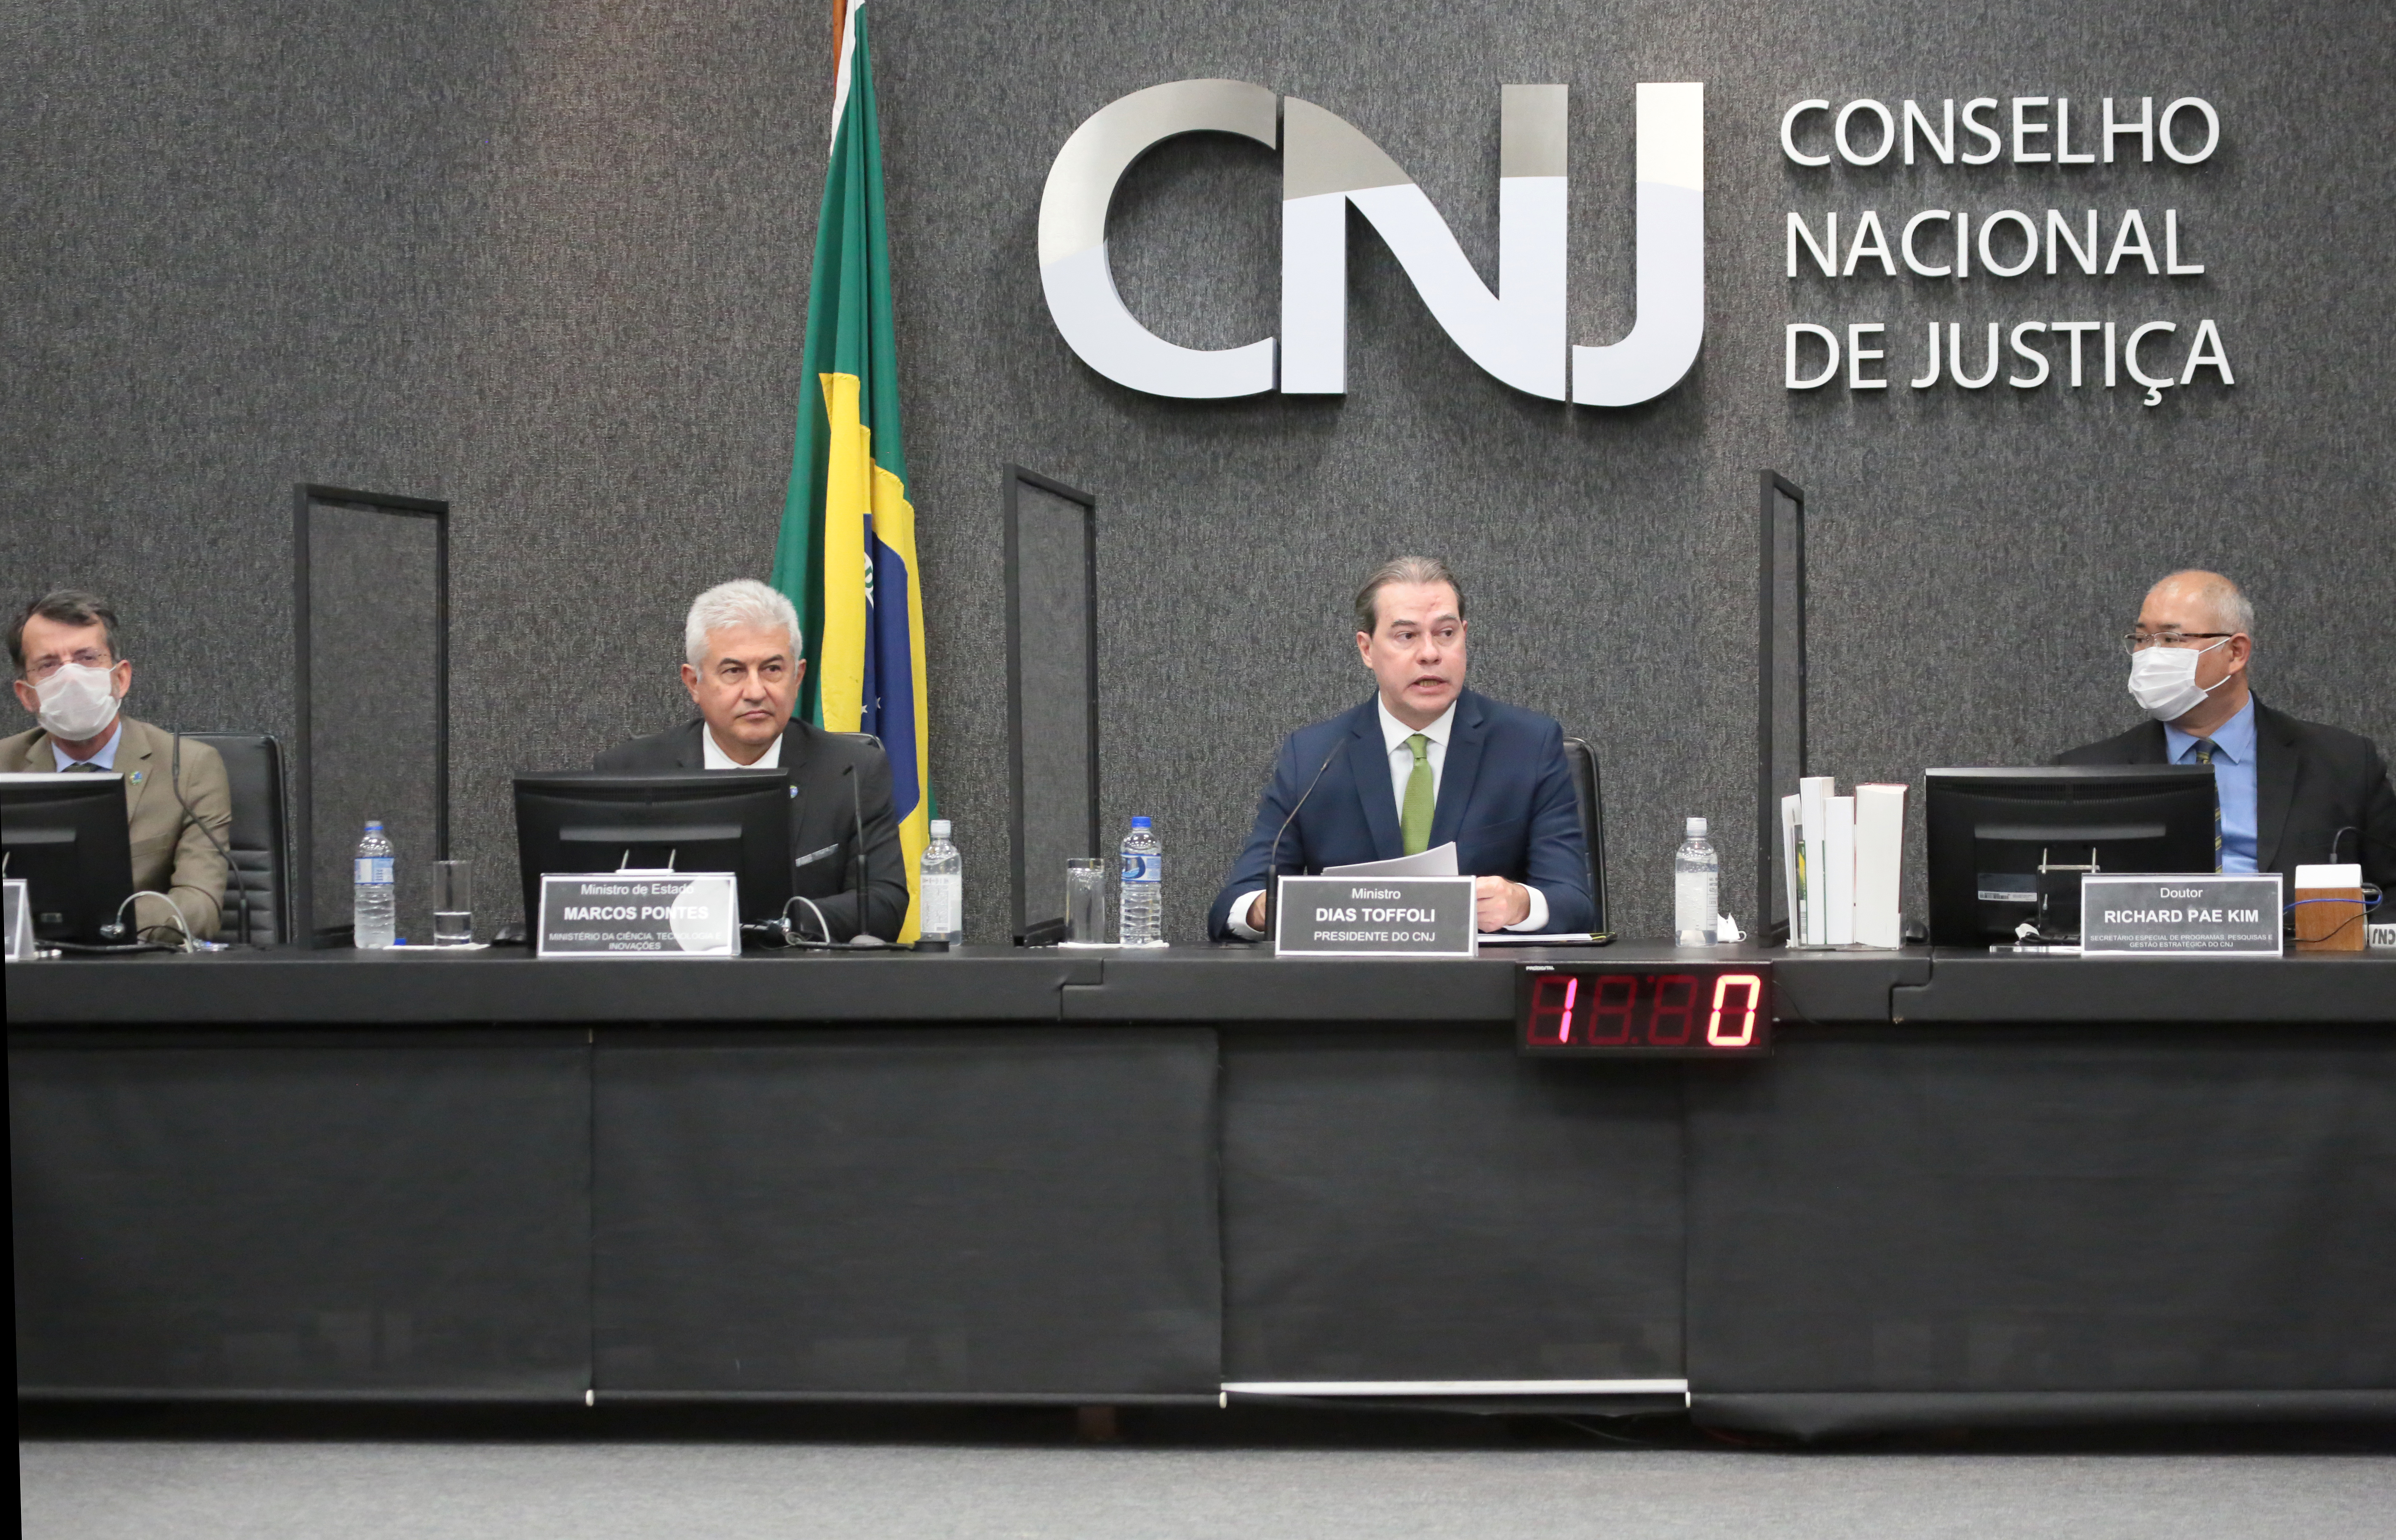 Na mesa, lado a lado, Nelson Simões, Marcos Pontes, Dias Toffoli e Richard Pae Kim